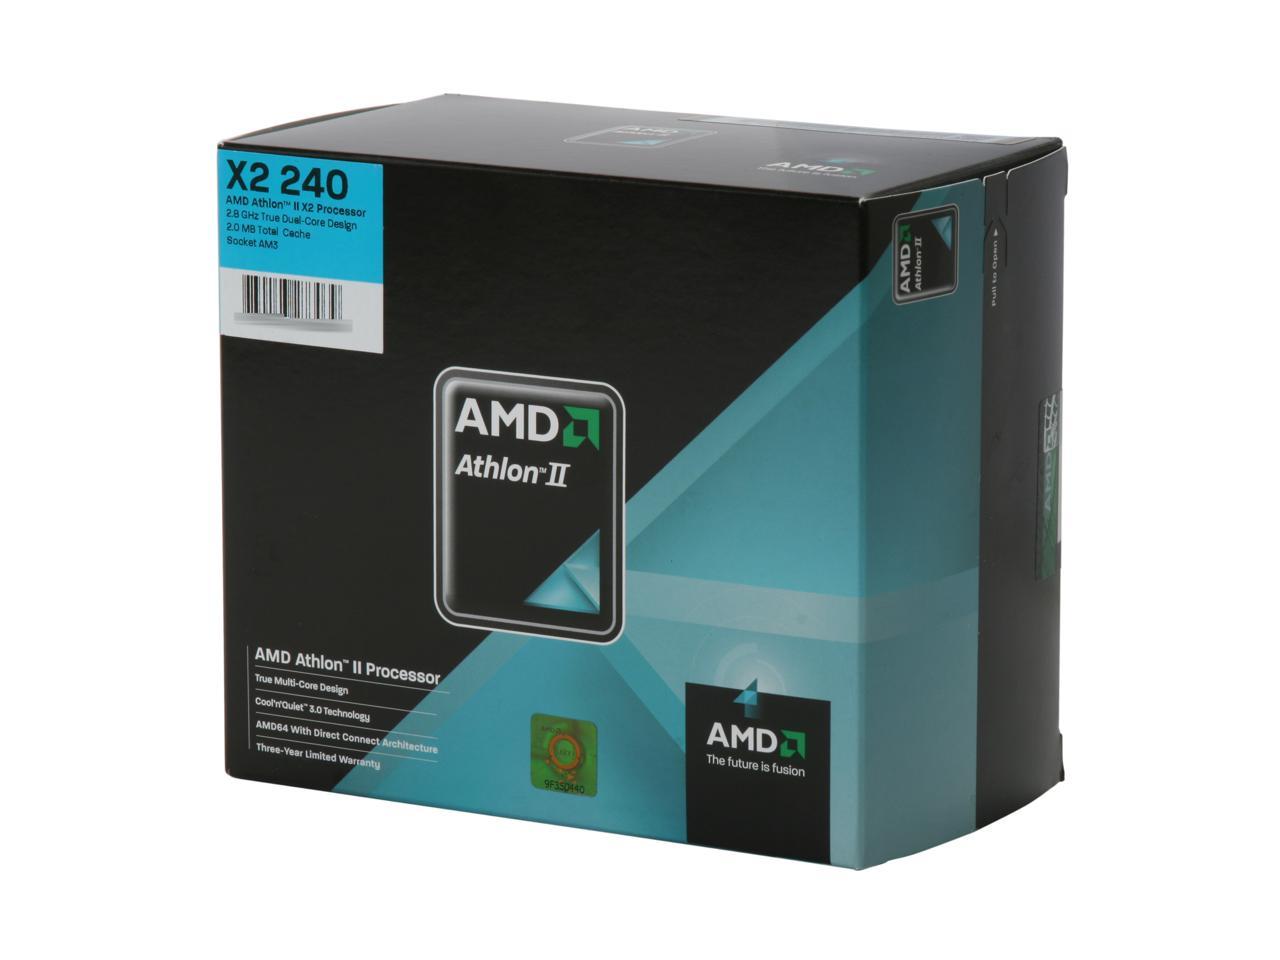 AMD Athlon II X2 240 Regor Dual-Core 2.8 GHz Socket AM3 65W ADX240OCGQBOX Processor